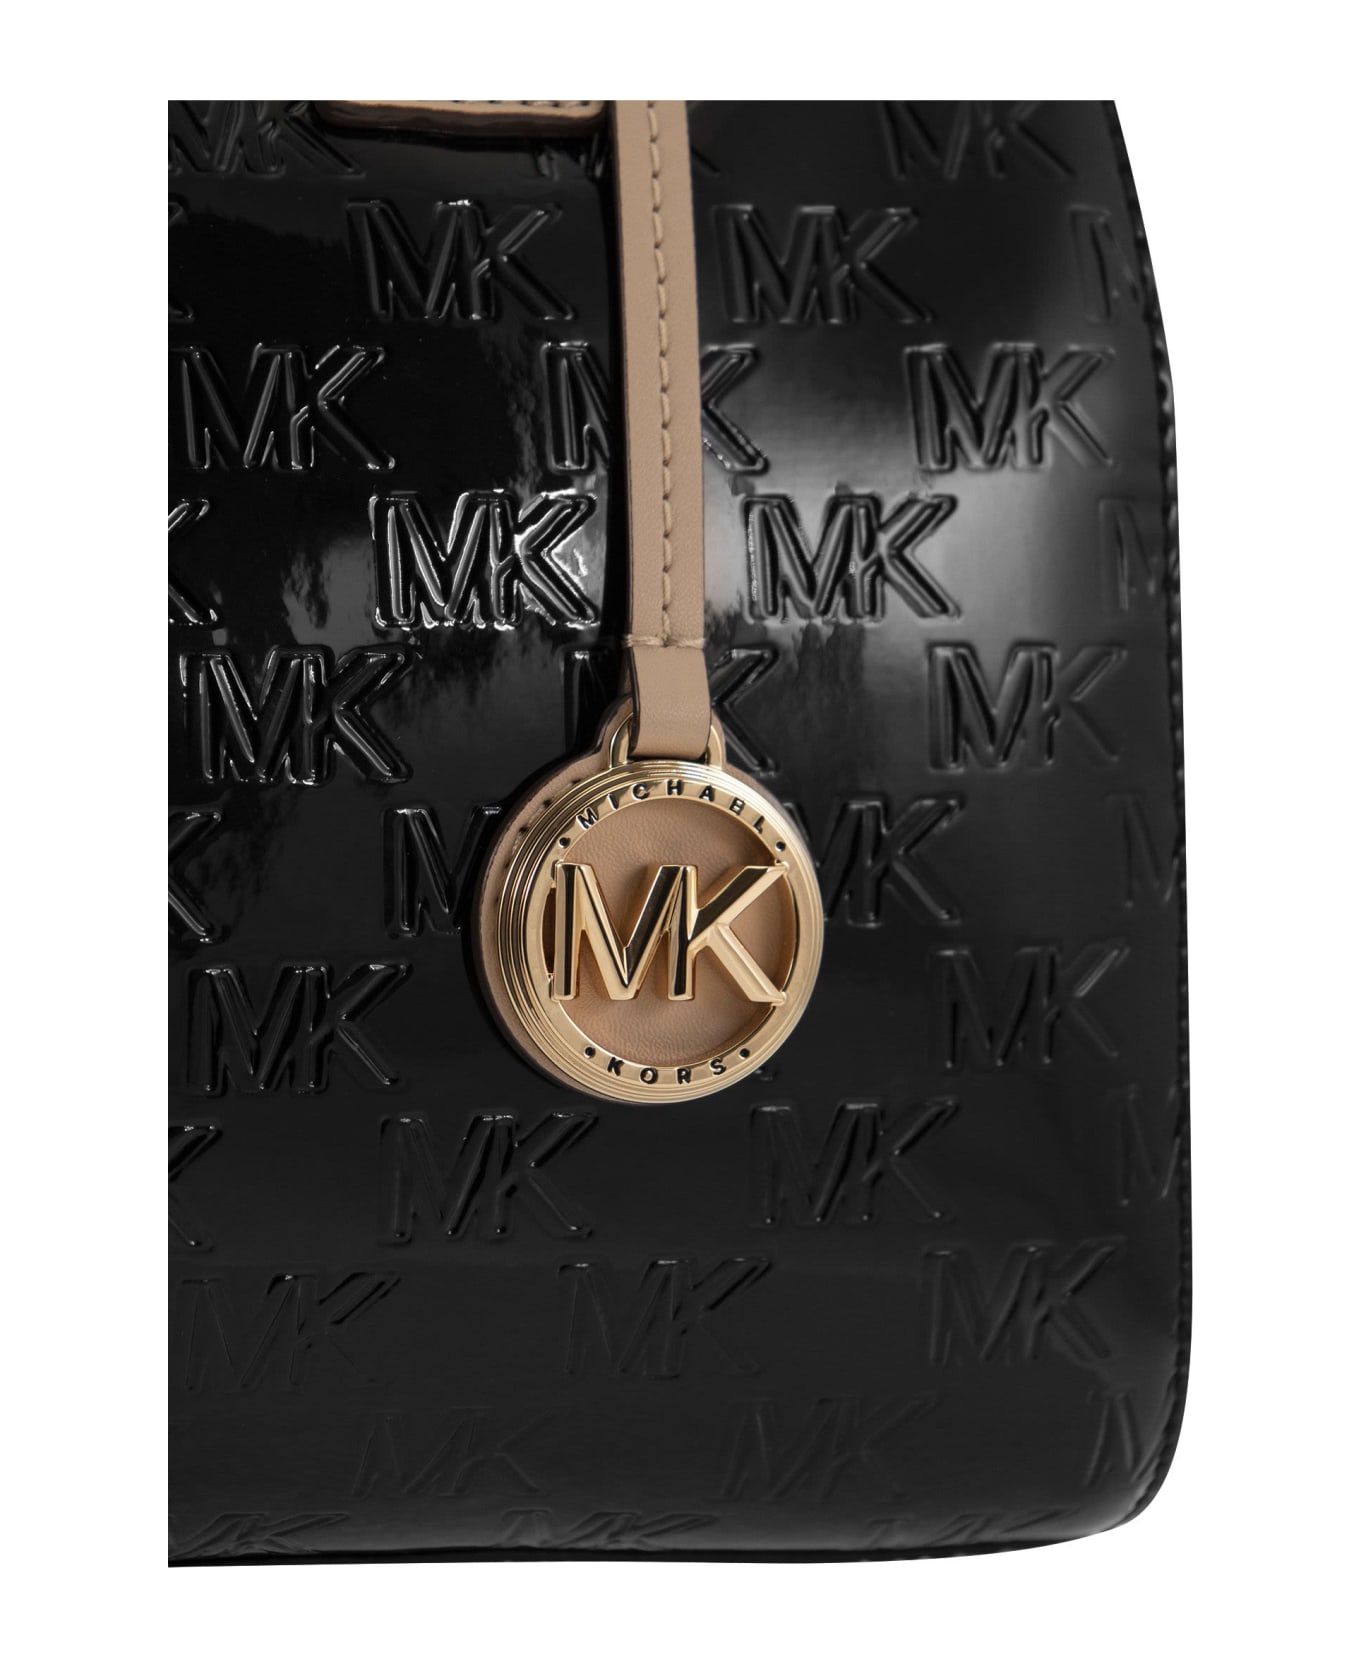 Michael Kors Hand Bag With Shoulder Strap And Monogram - Black